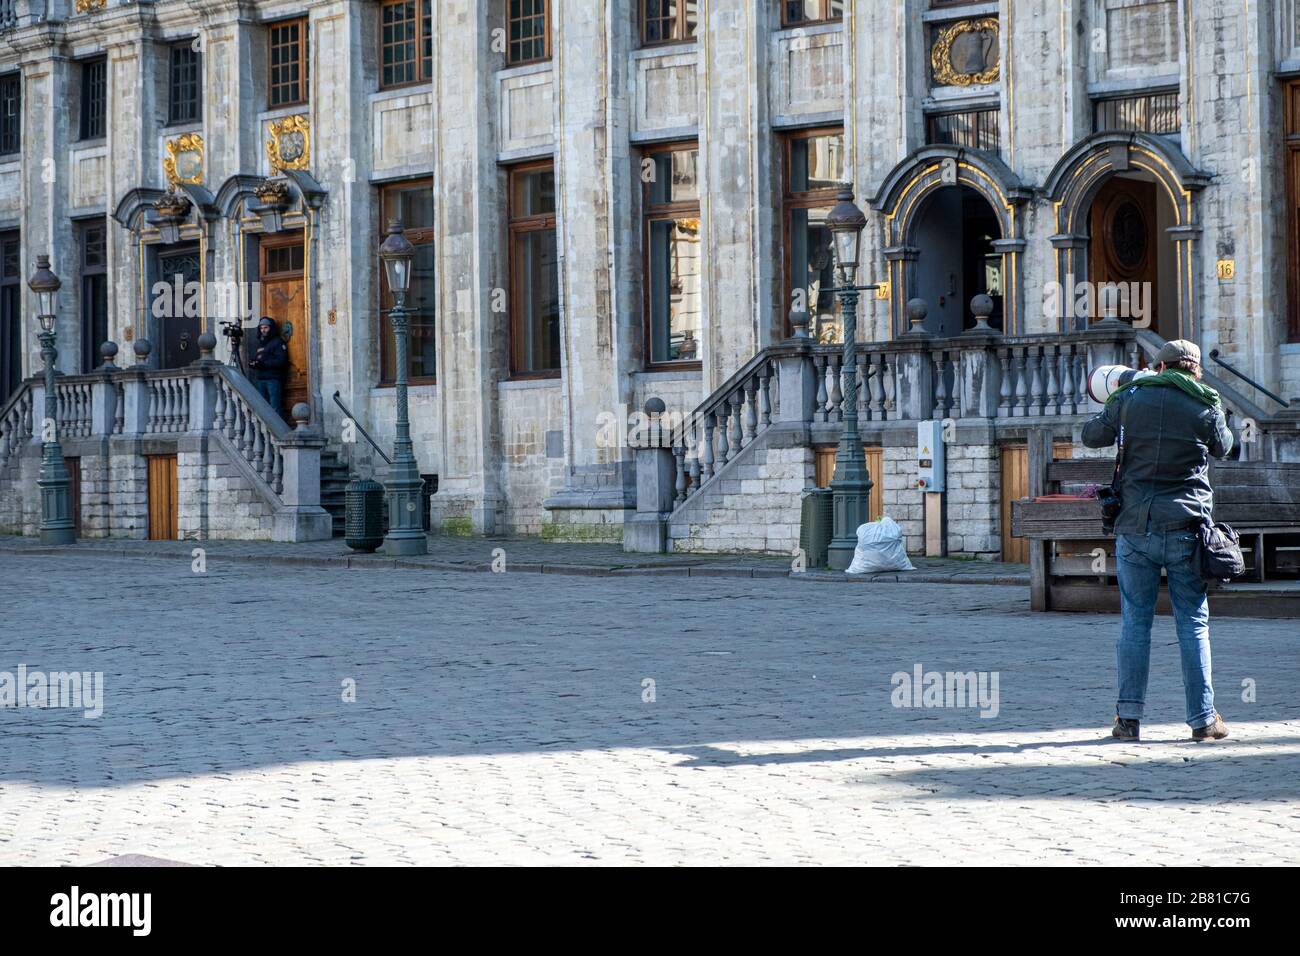 Ein Fotograf nimmt Bilder auf, ein anderer scheint den Grand Place kurz nach Mittag zu Filmen, wenn neue strengere Einschränkungen stattfinden Stockfoto